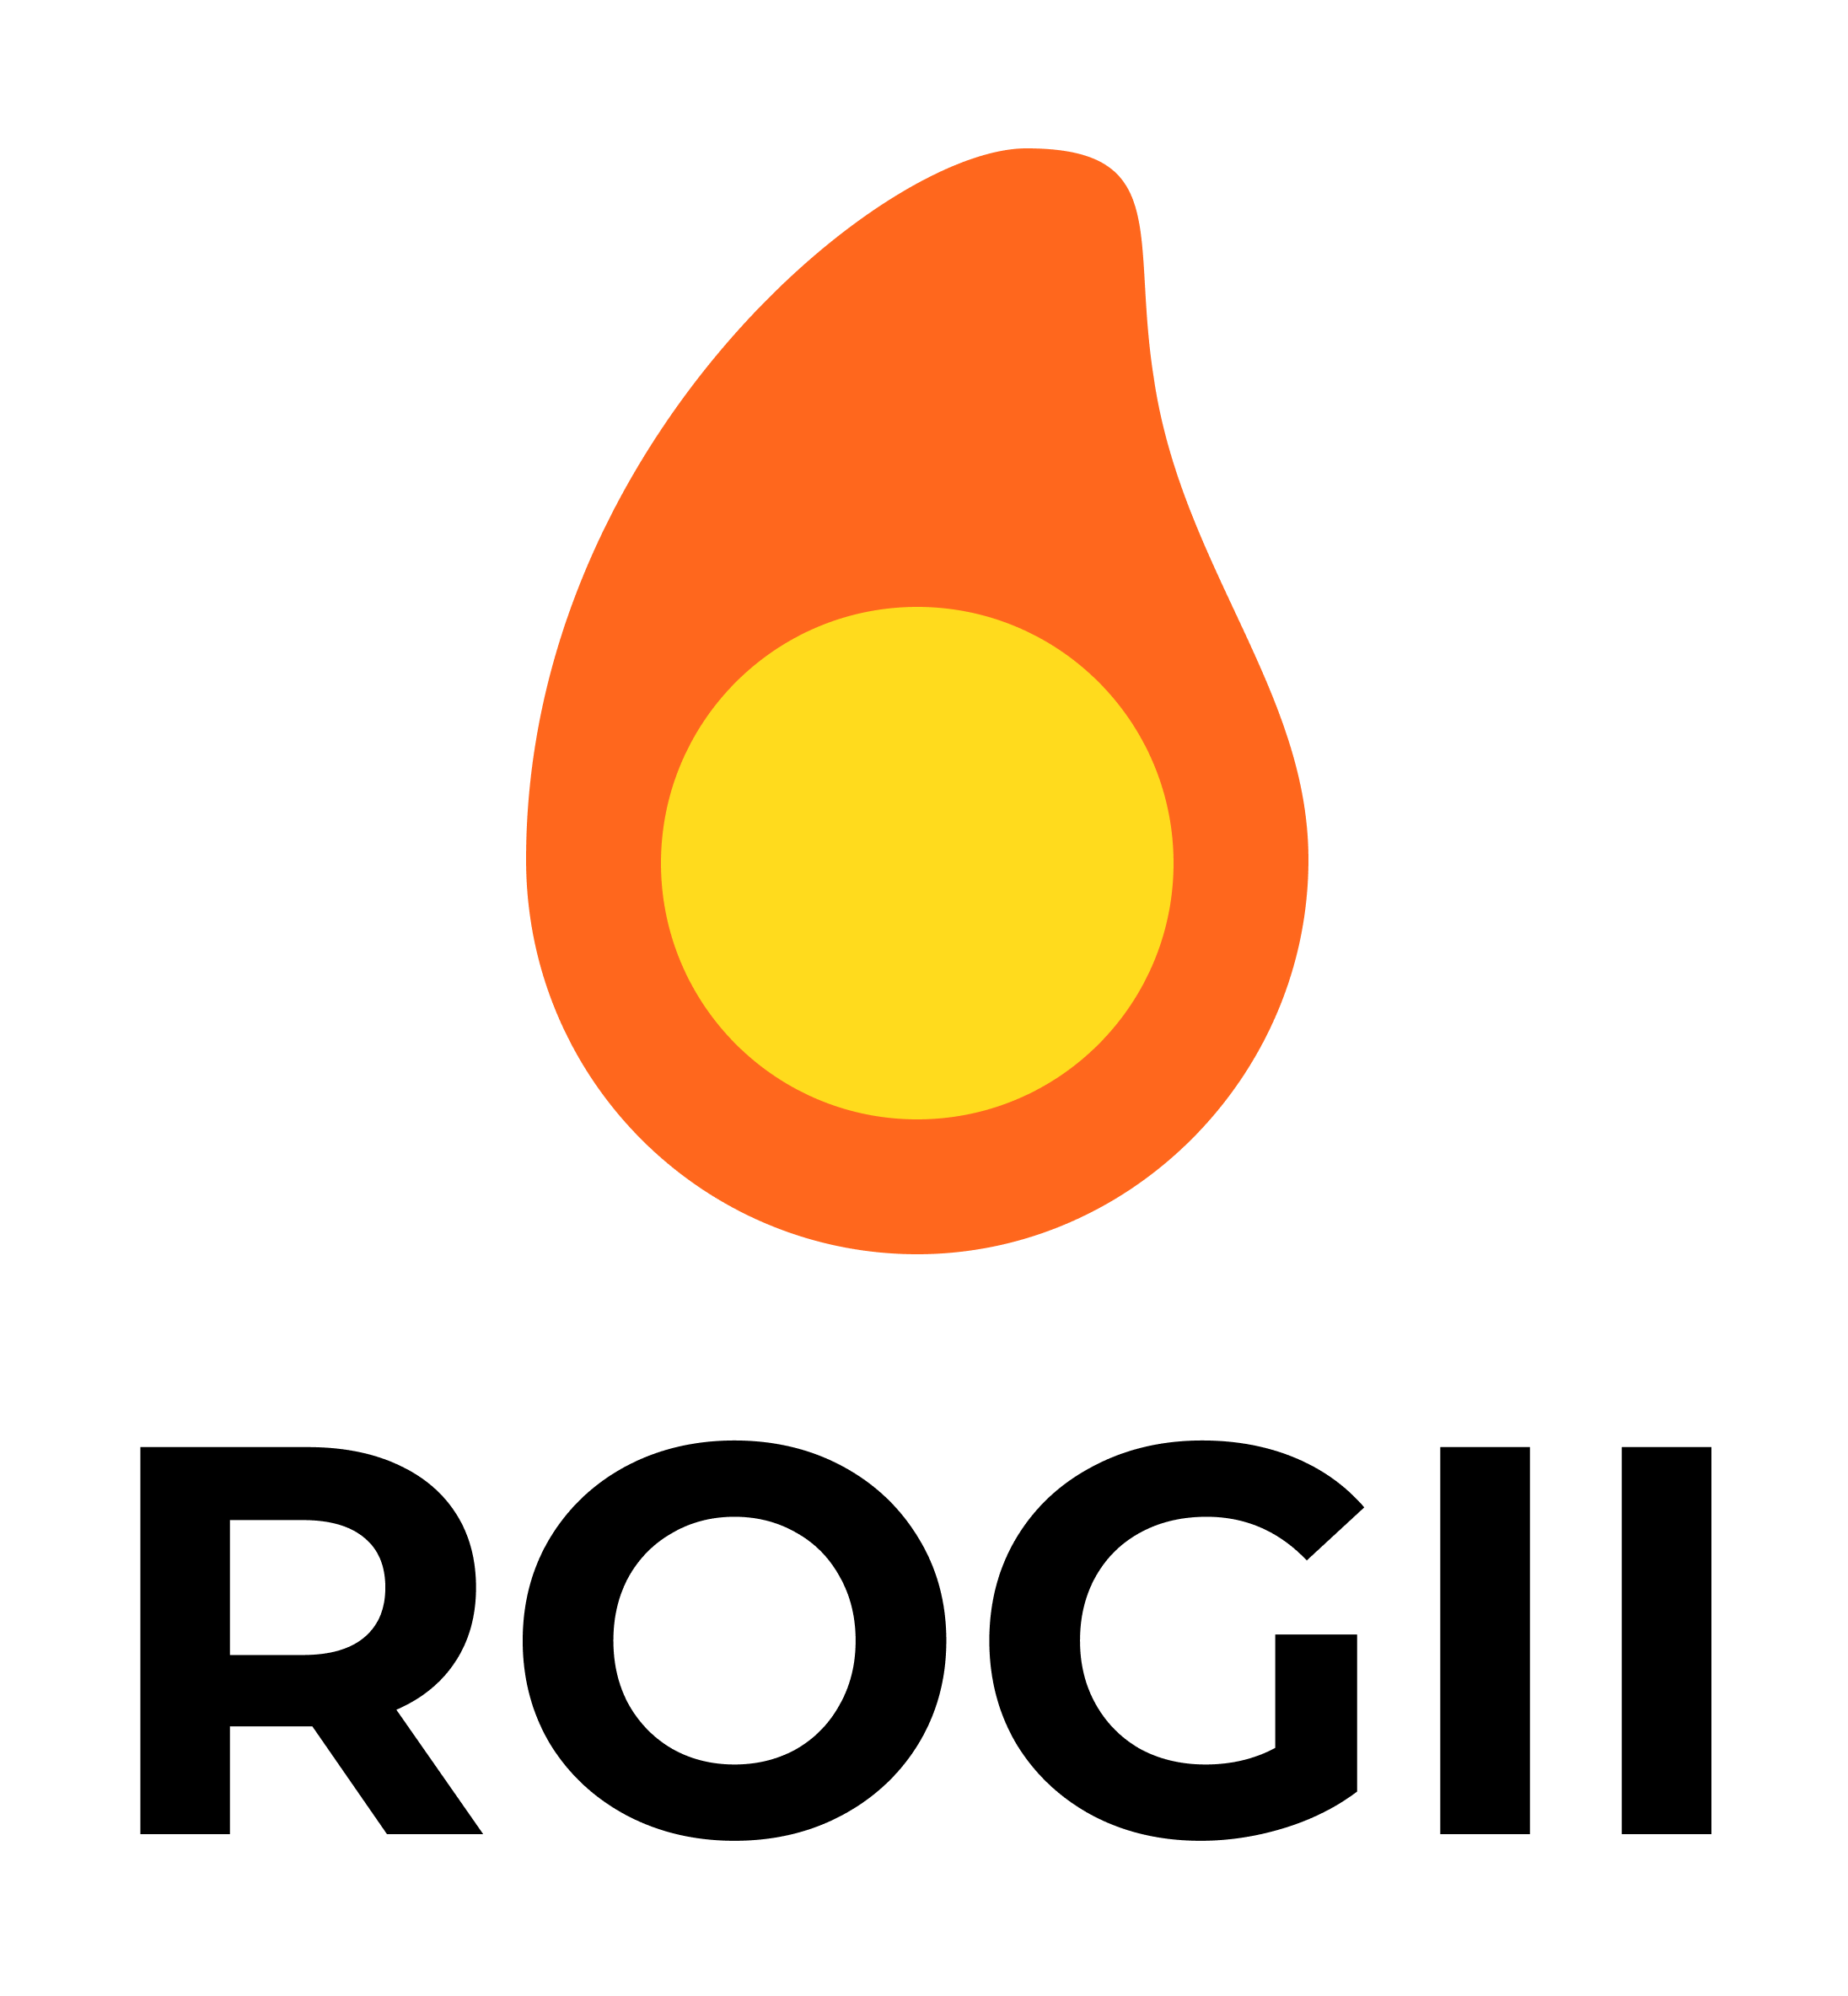 ROGII logo, confirmed until 2025-04-15